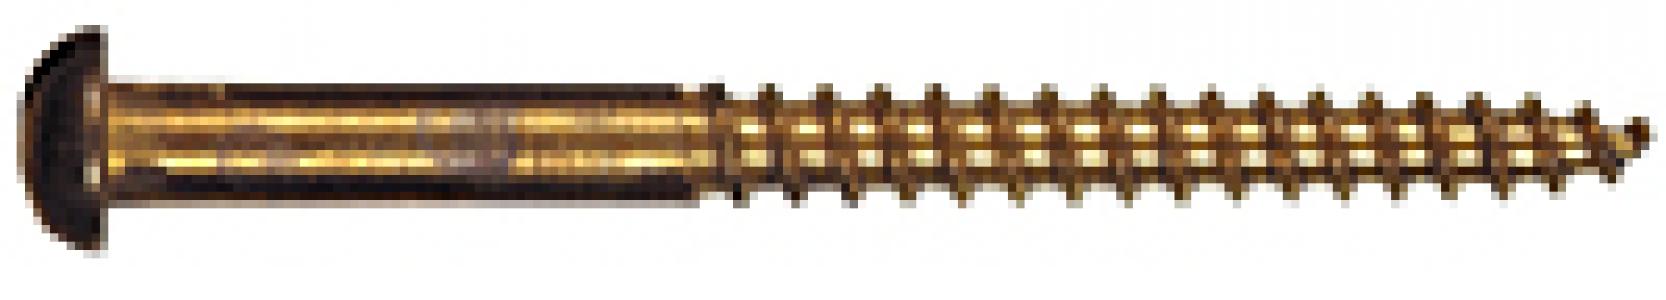 12x1-1/2 RH Wood Screw Brass